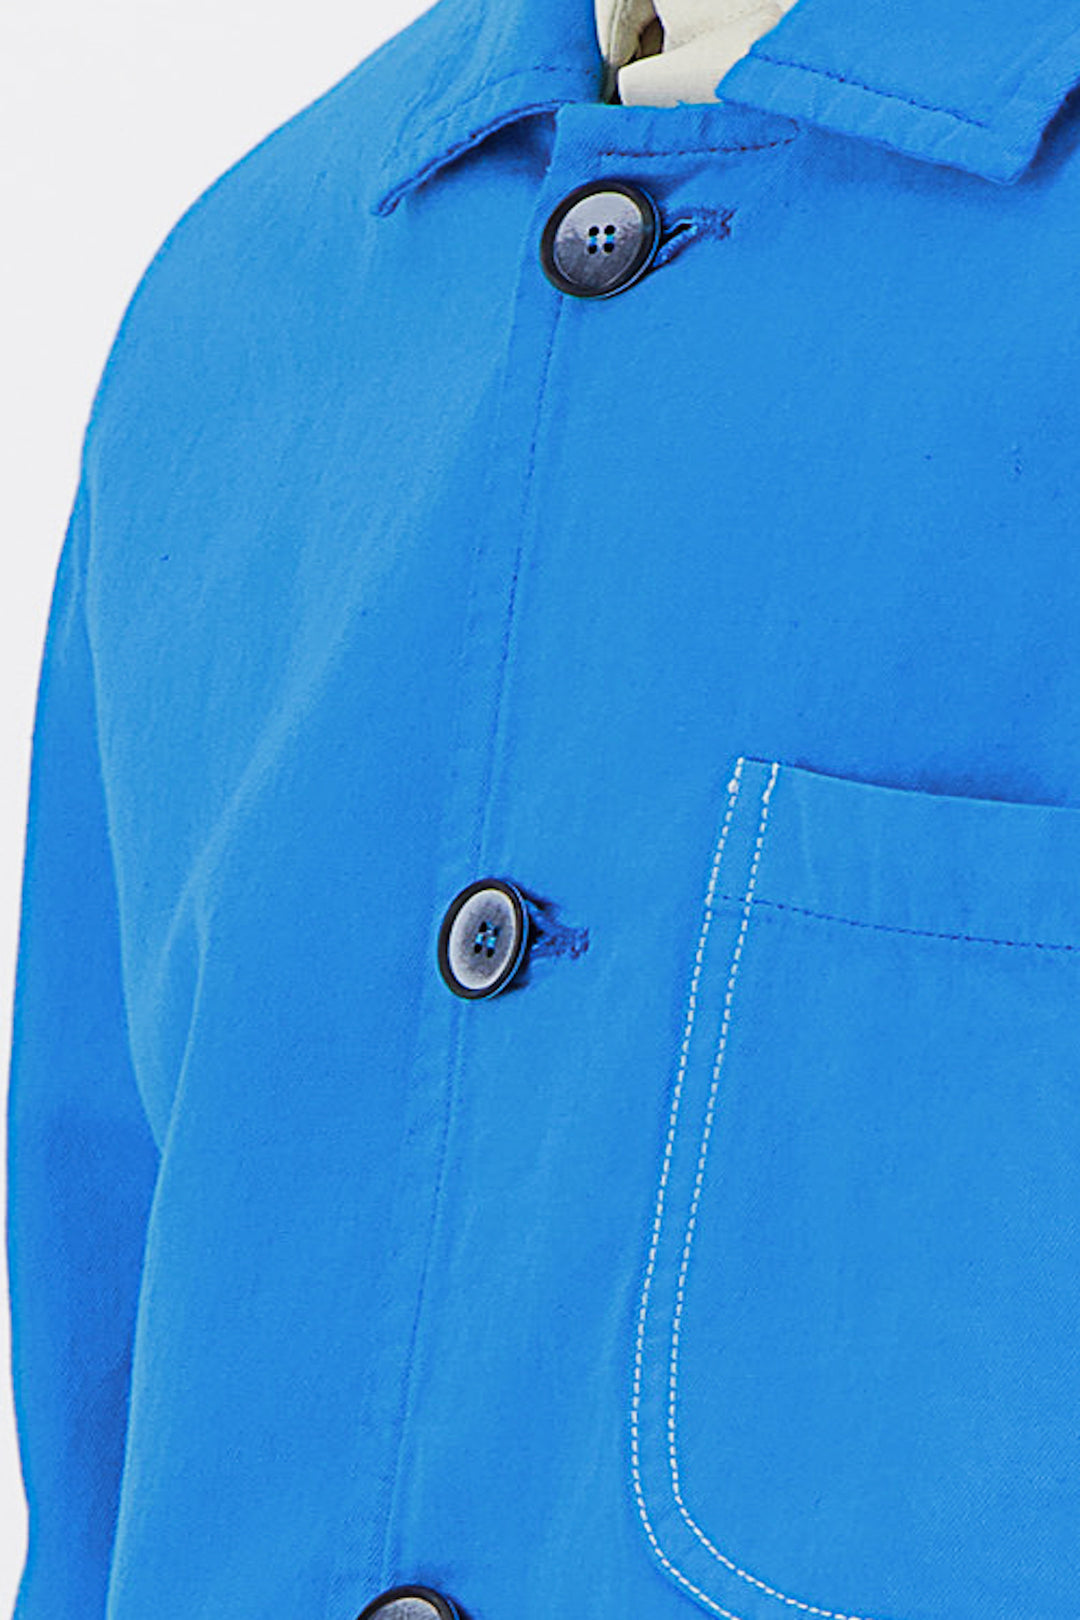 Hard Blue Workwear Jacket